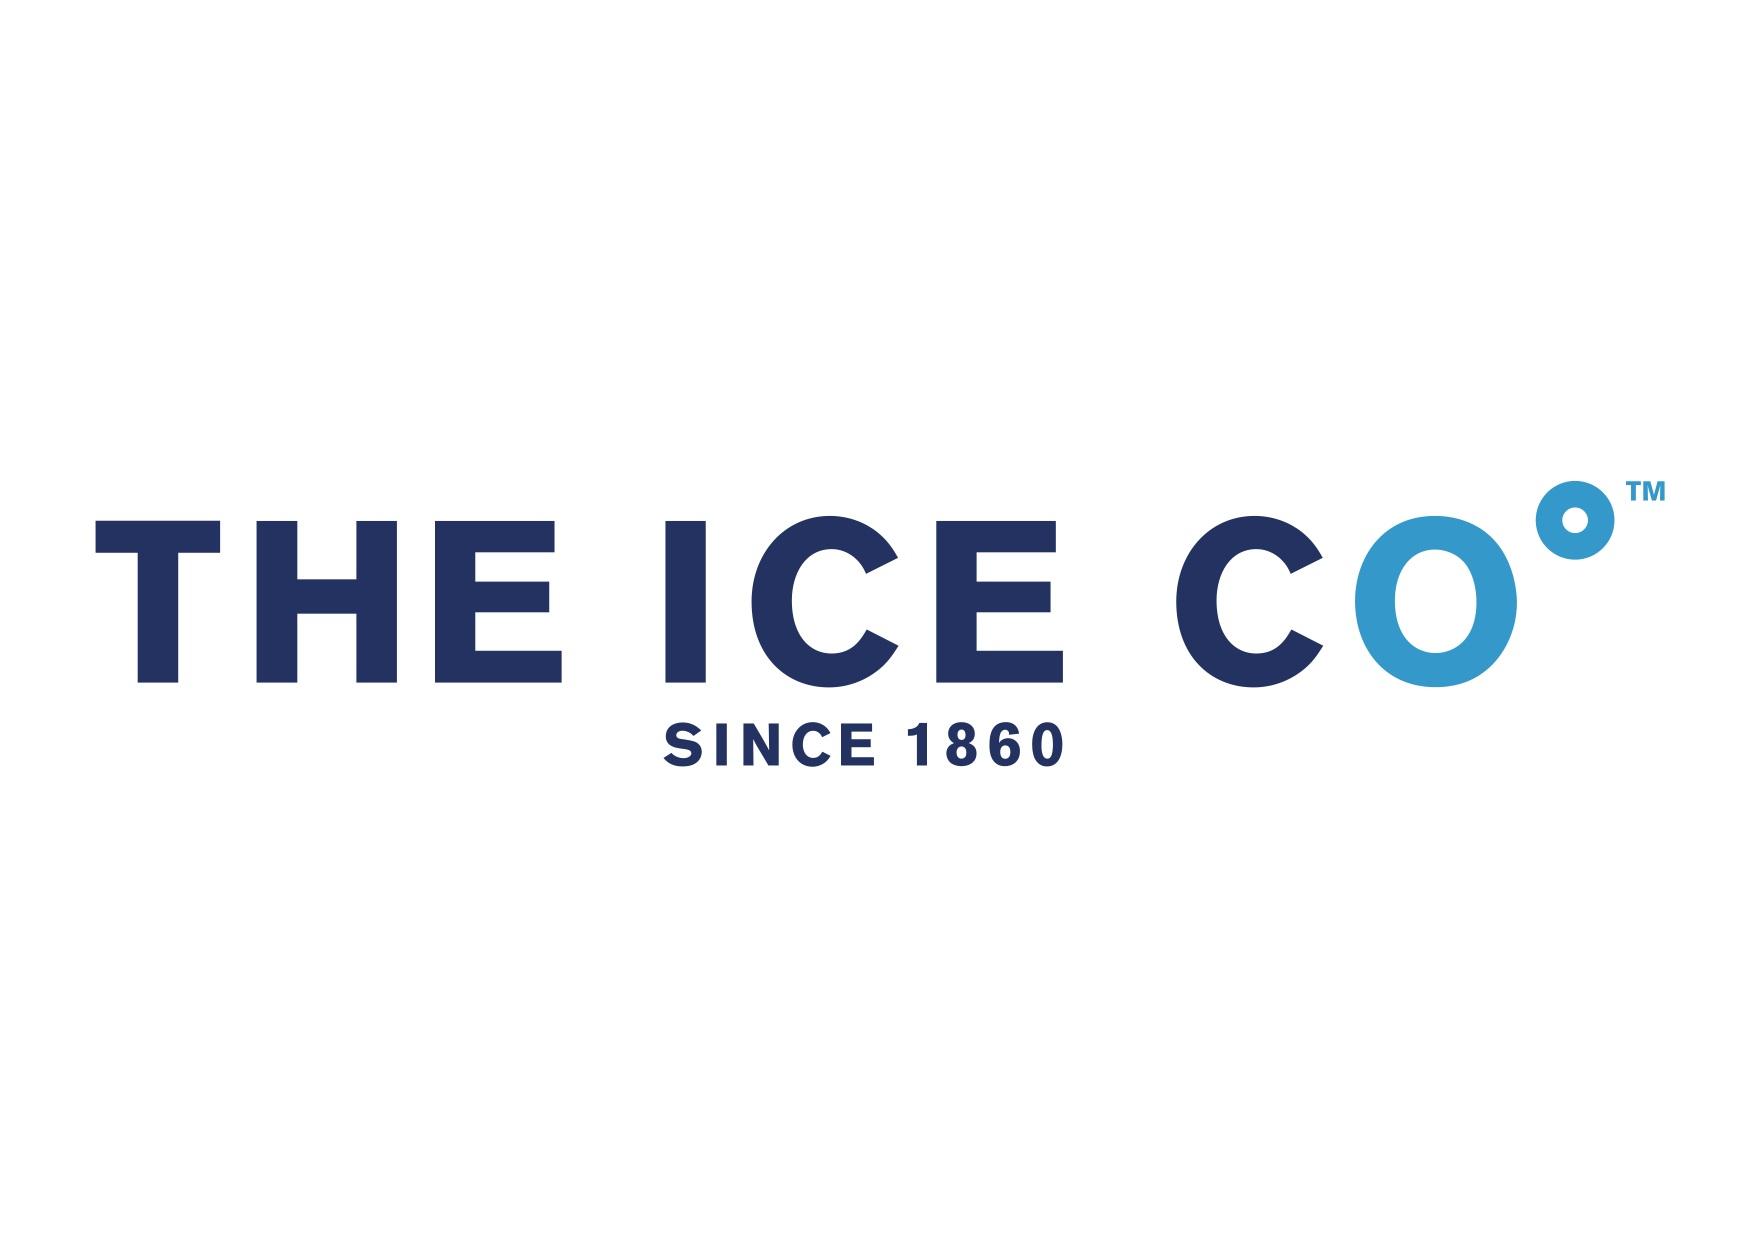 Ice Company Logo - The ICE co | ICE